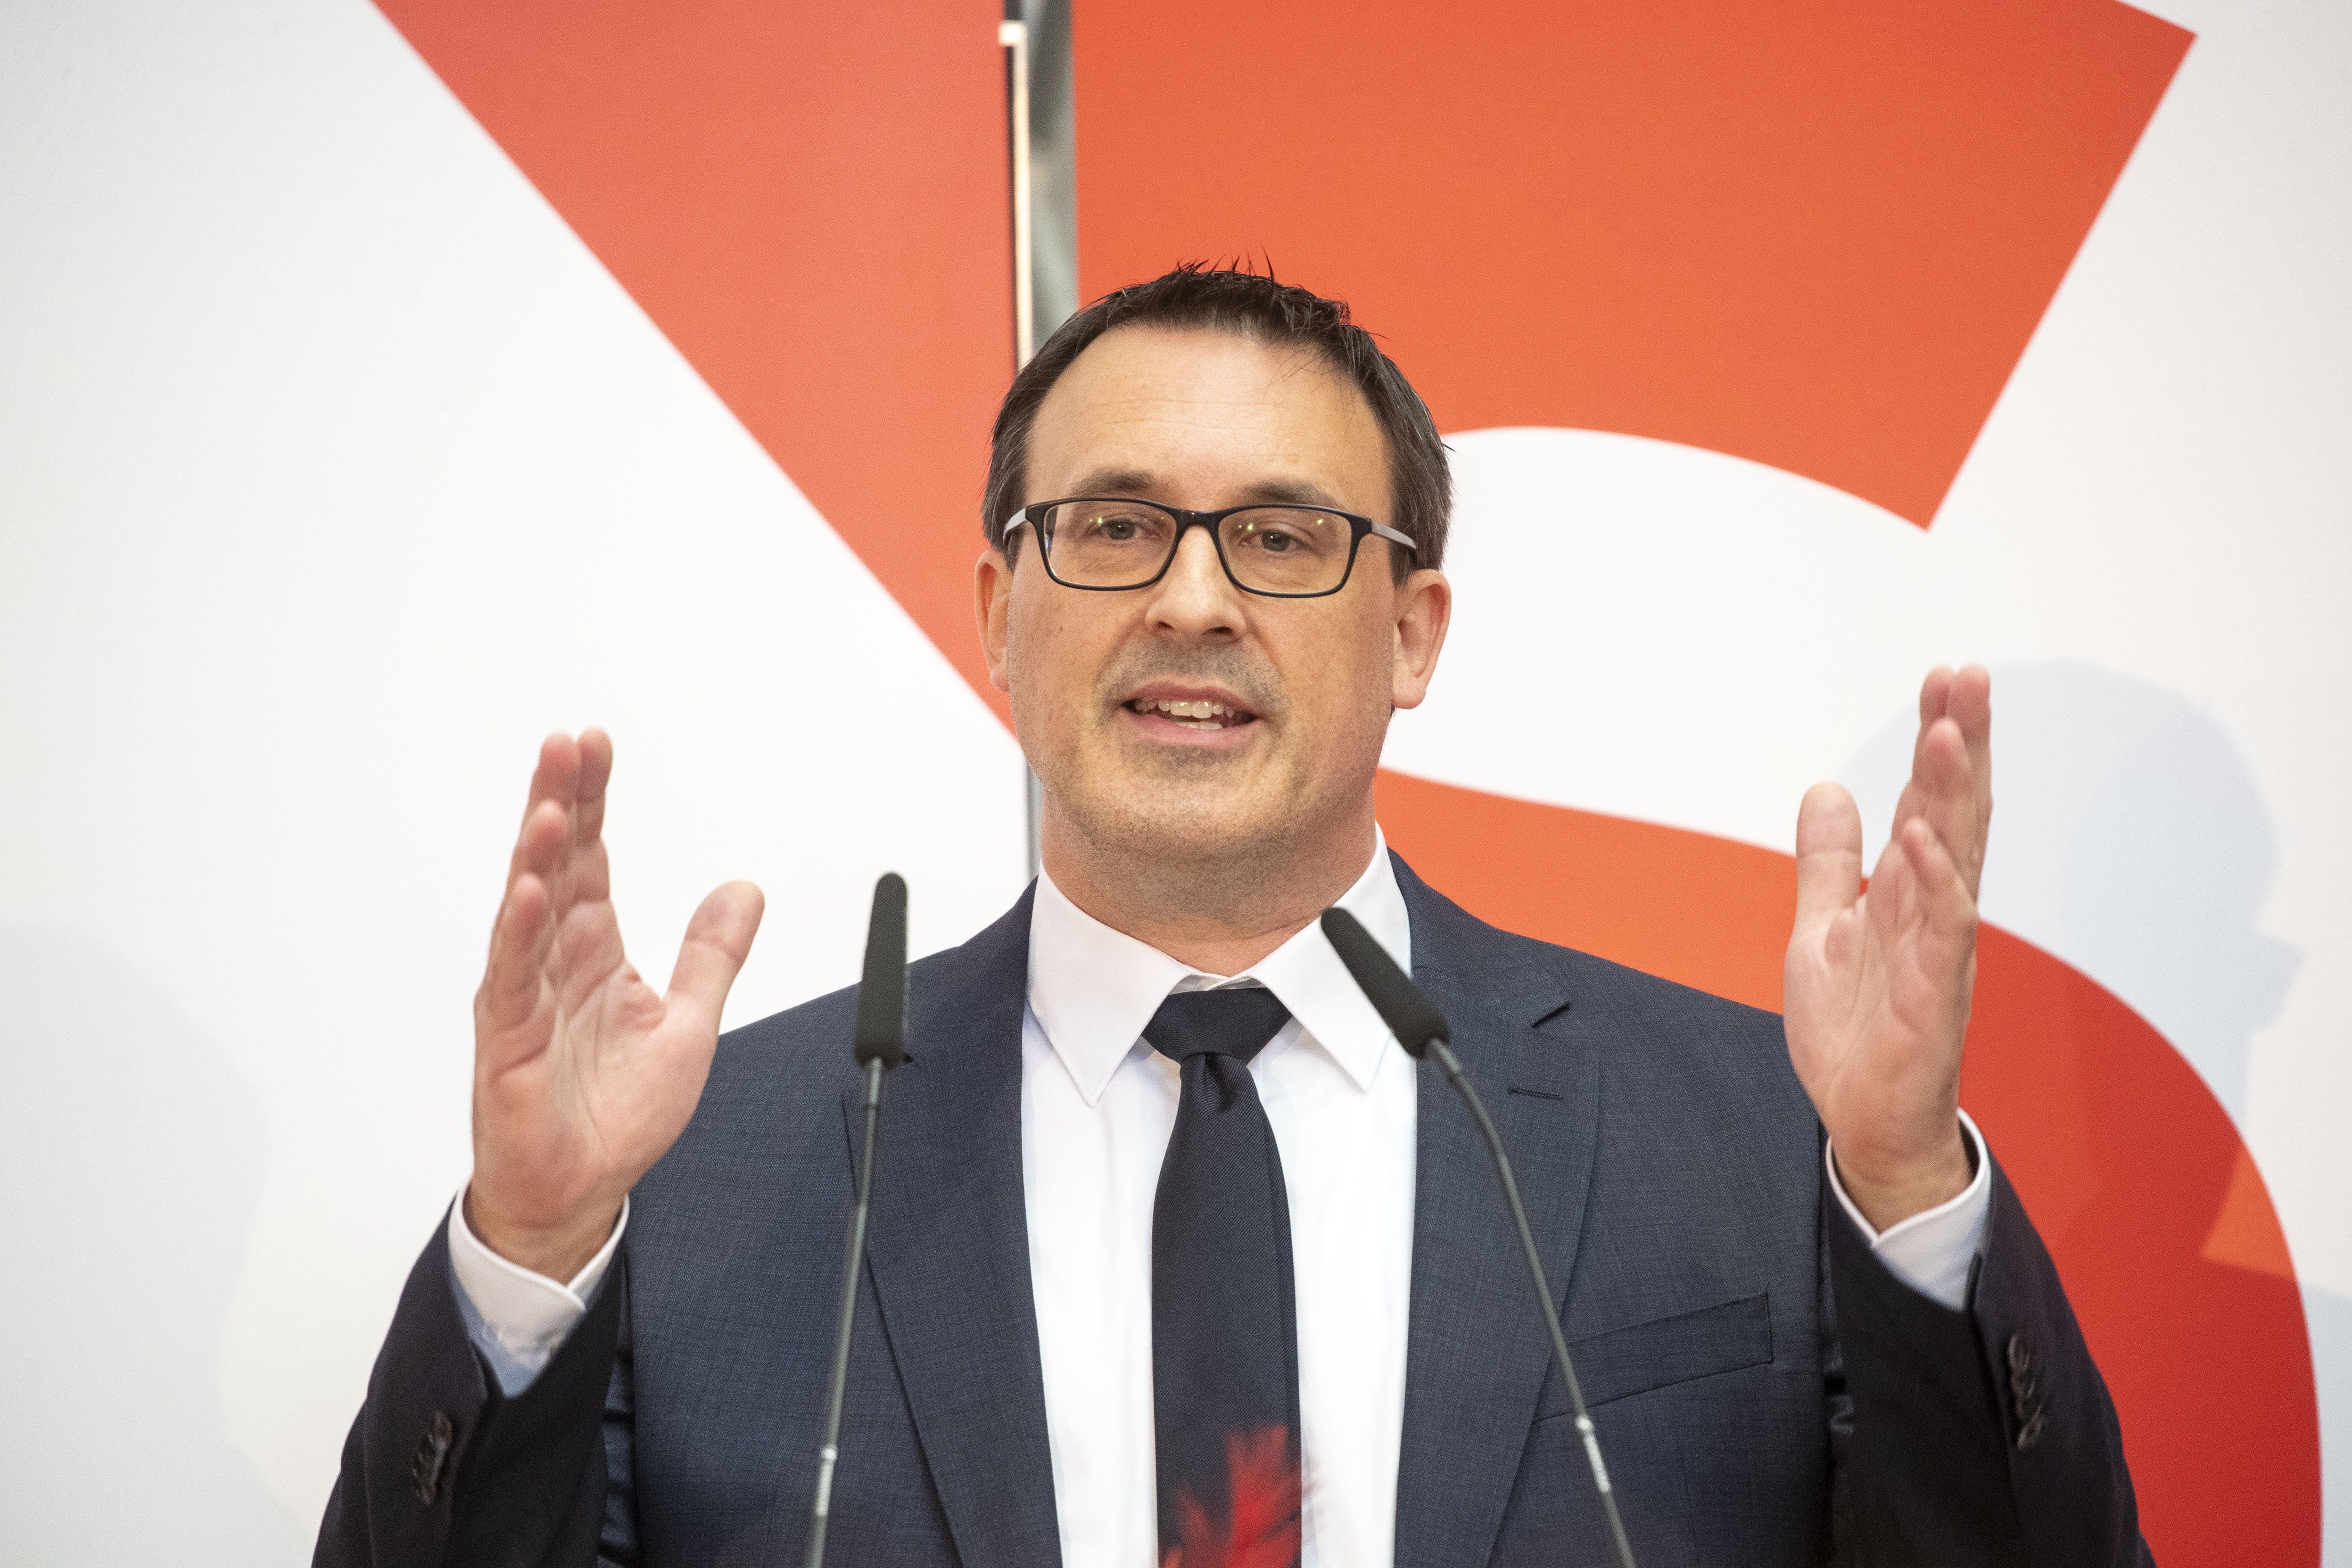 Der Bundestagsabgeordnete Sören Bartol ist neuer Landesvorsitzender der SPD in Hessen.